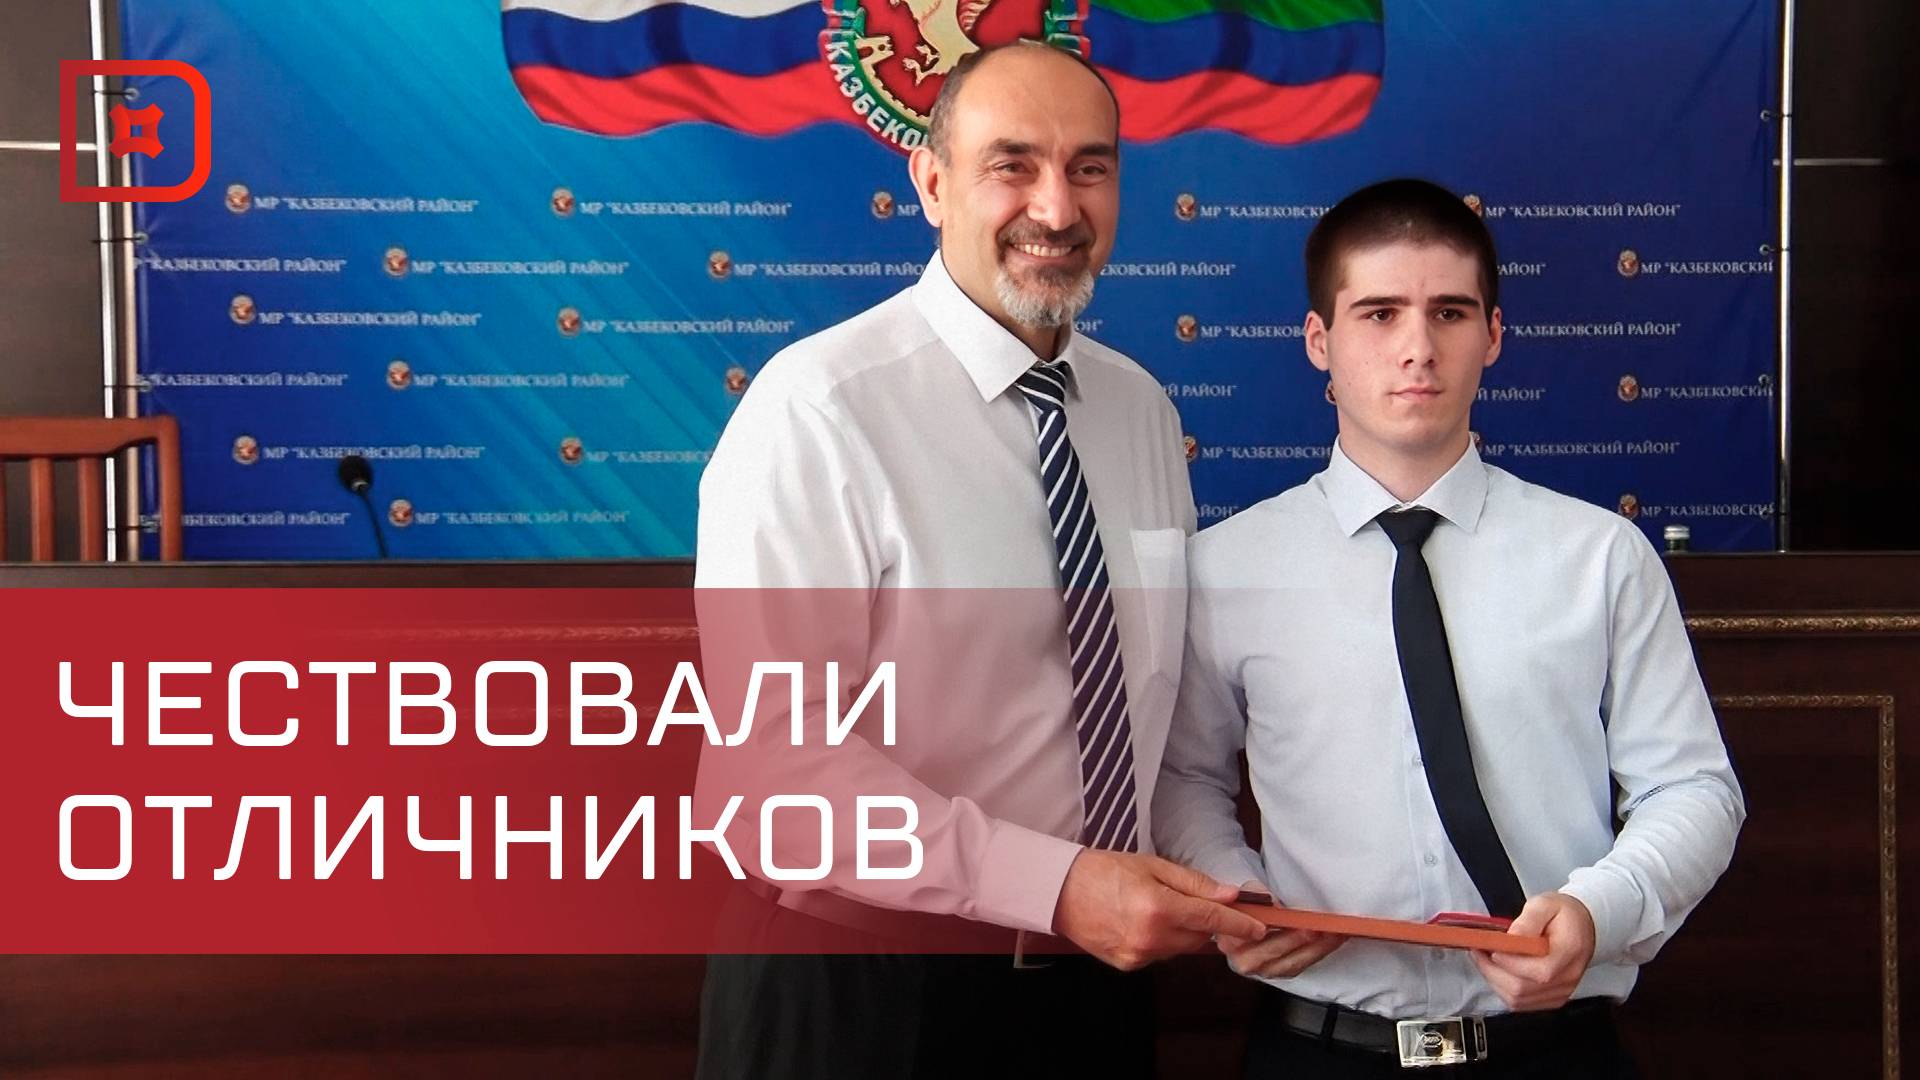 Отличников учёбы чествовали в Казбековском районе